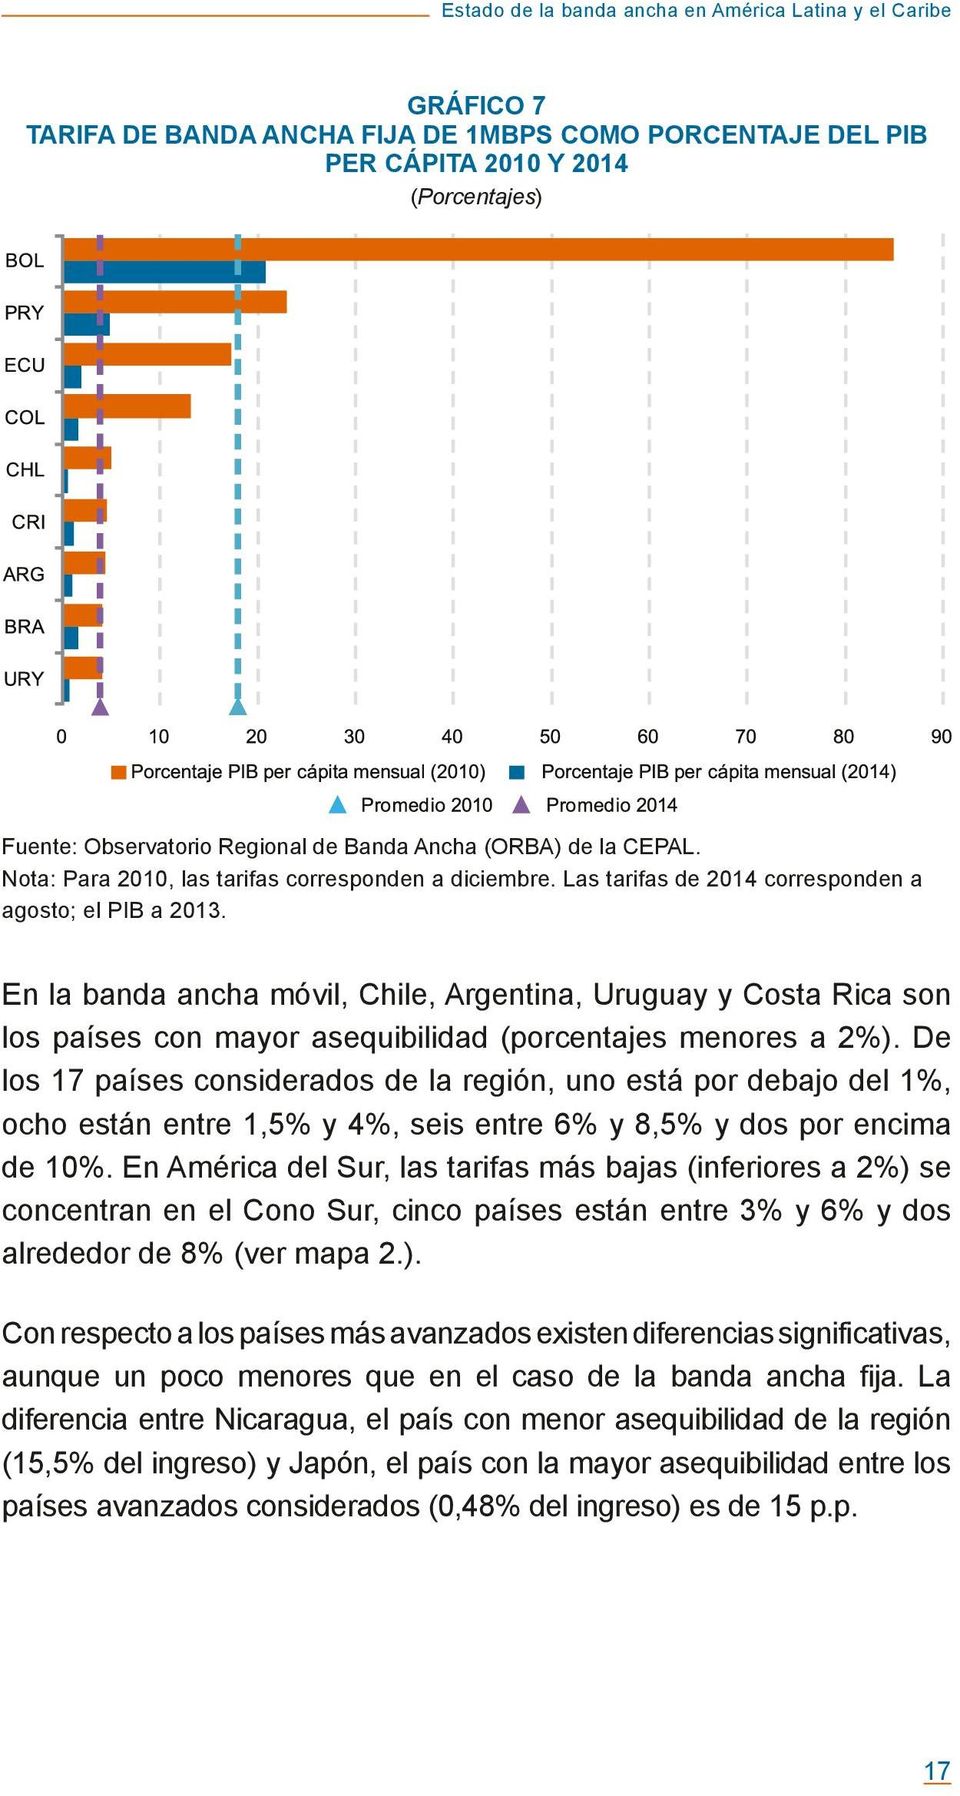 En la banda ancha móvil, Chile, Argentina, Uruguay y Costa Rica son los países con mayor asequibilidad (porcentajes menores a 2%).